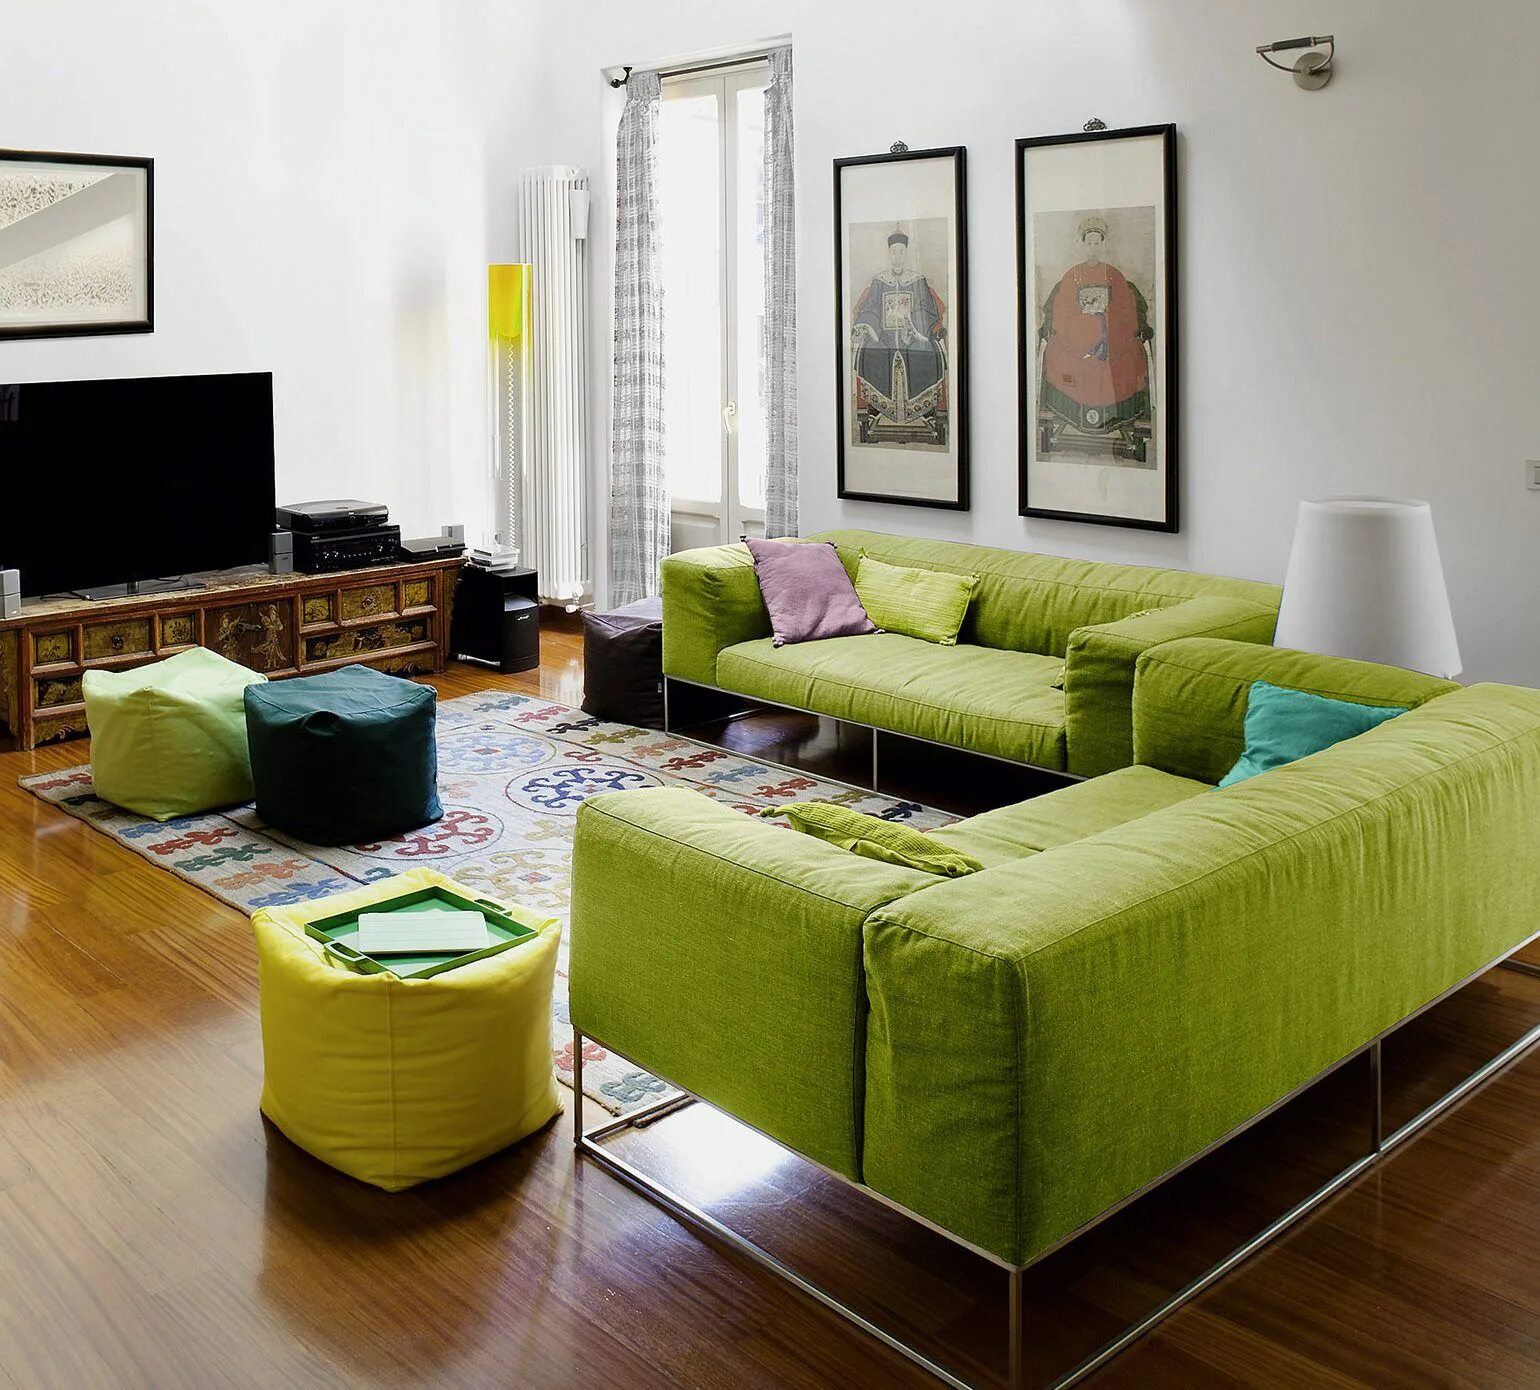 Цвет диванов в интерьере гостиной. Зеленый цвет в интерьере. Гостиная в зеленом цвете. Салатовый диван в интерьере. Салатный цвет в интерьере.